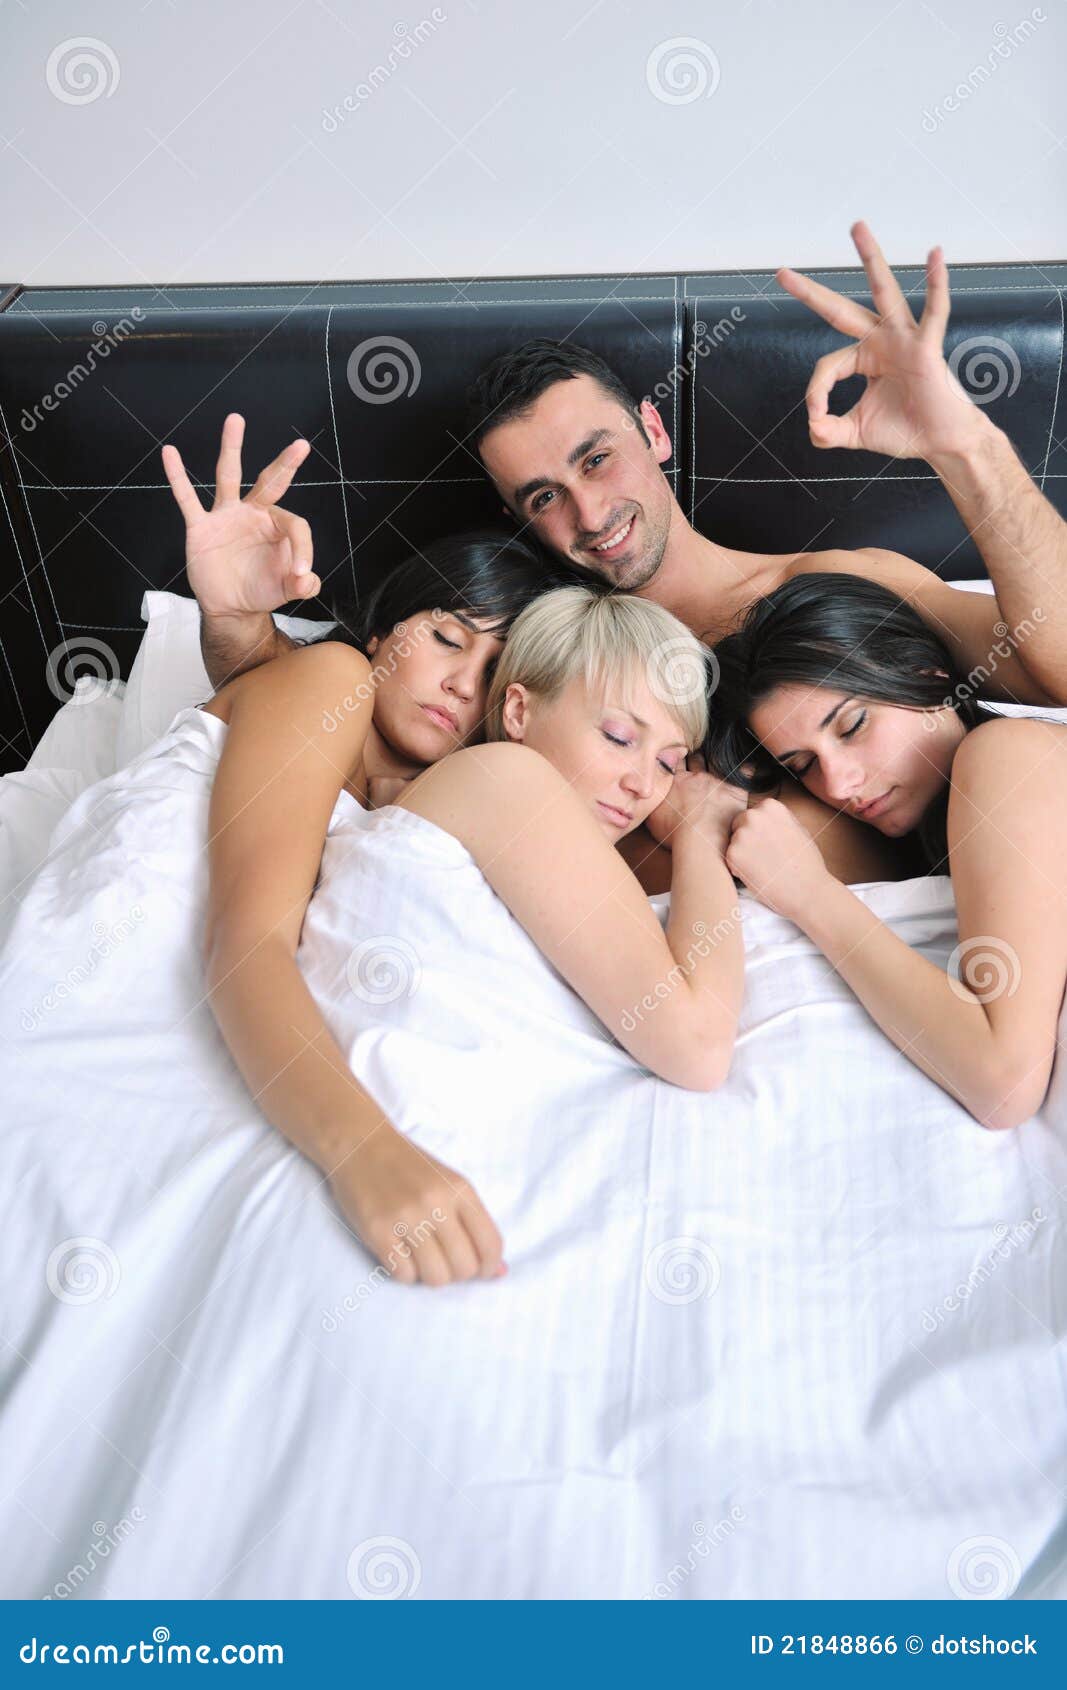 Кравец парень и три девушки после клуба. Трое людей в постели. Три человека в постели. Две девушки и парень в постели. Девушка и три мужчины в постели.